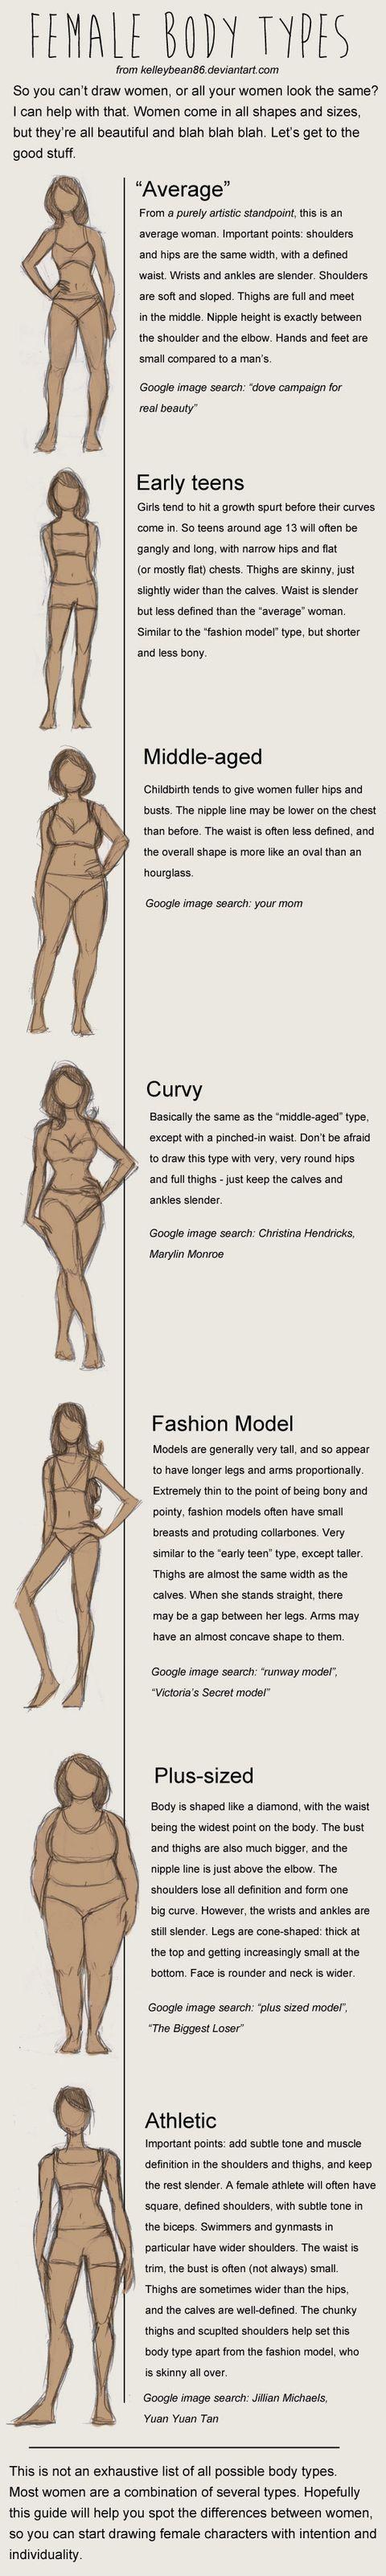 Female body types